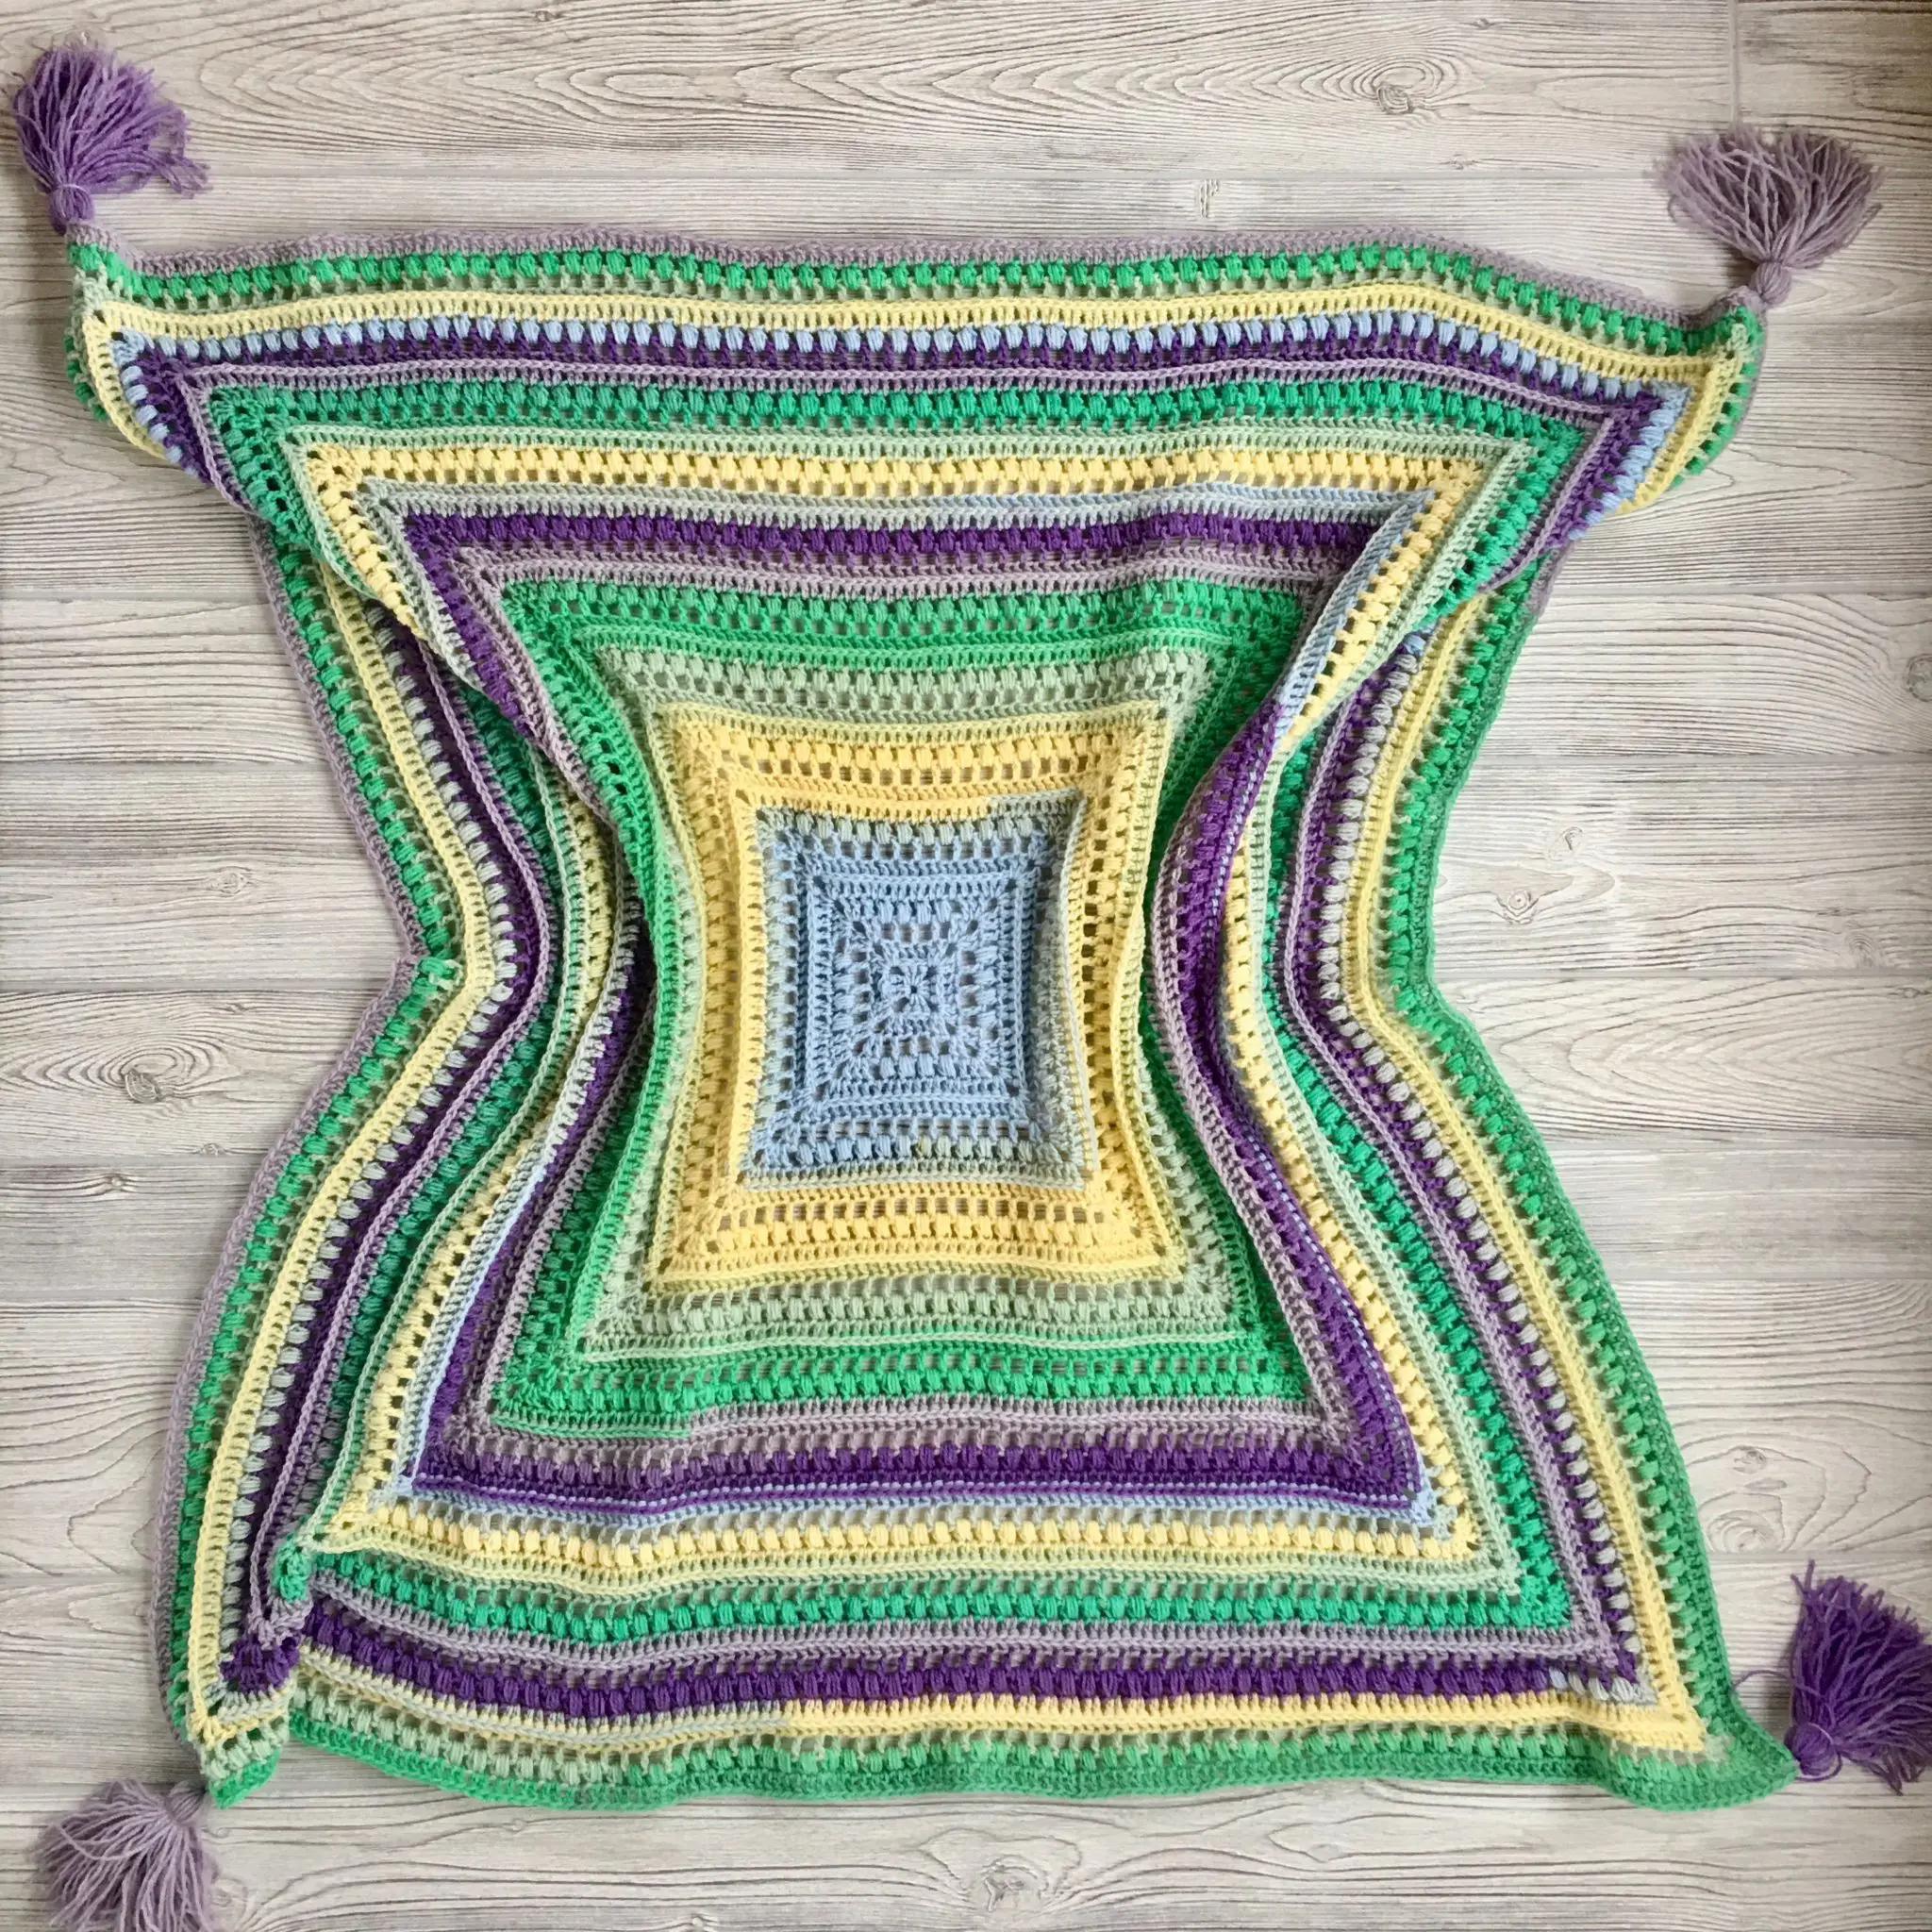 Wrap Me In Sunshine Blanket free crochet pattern!